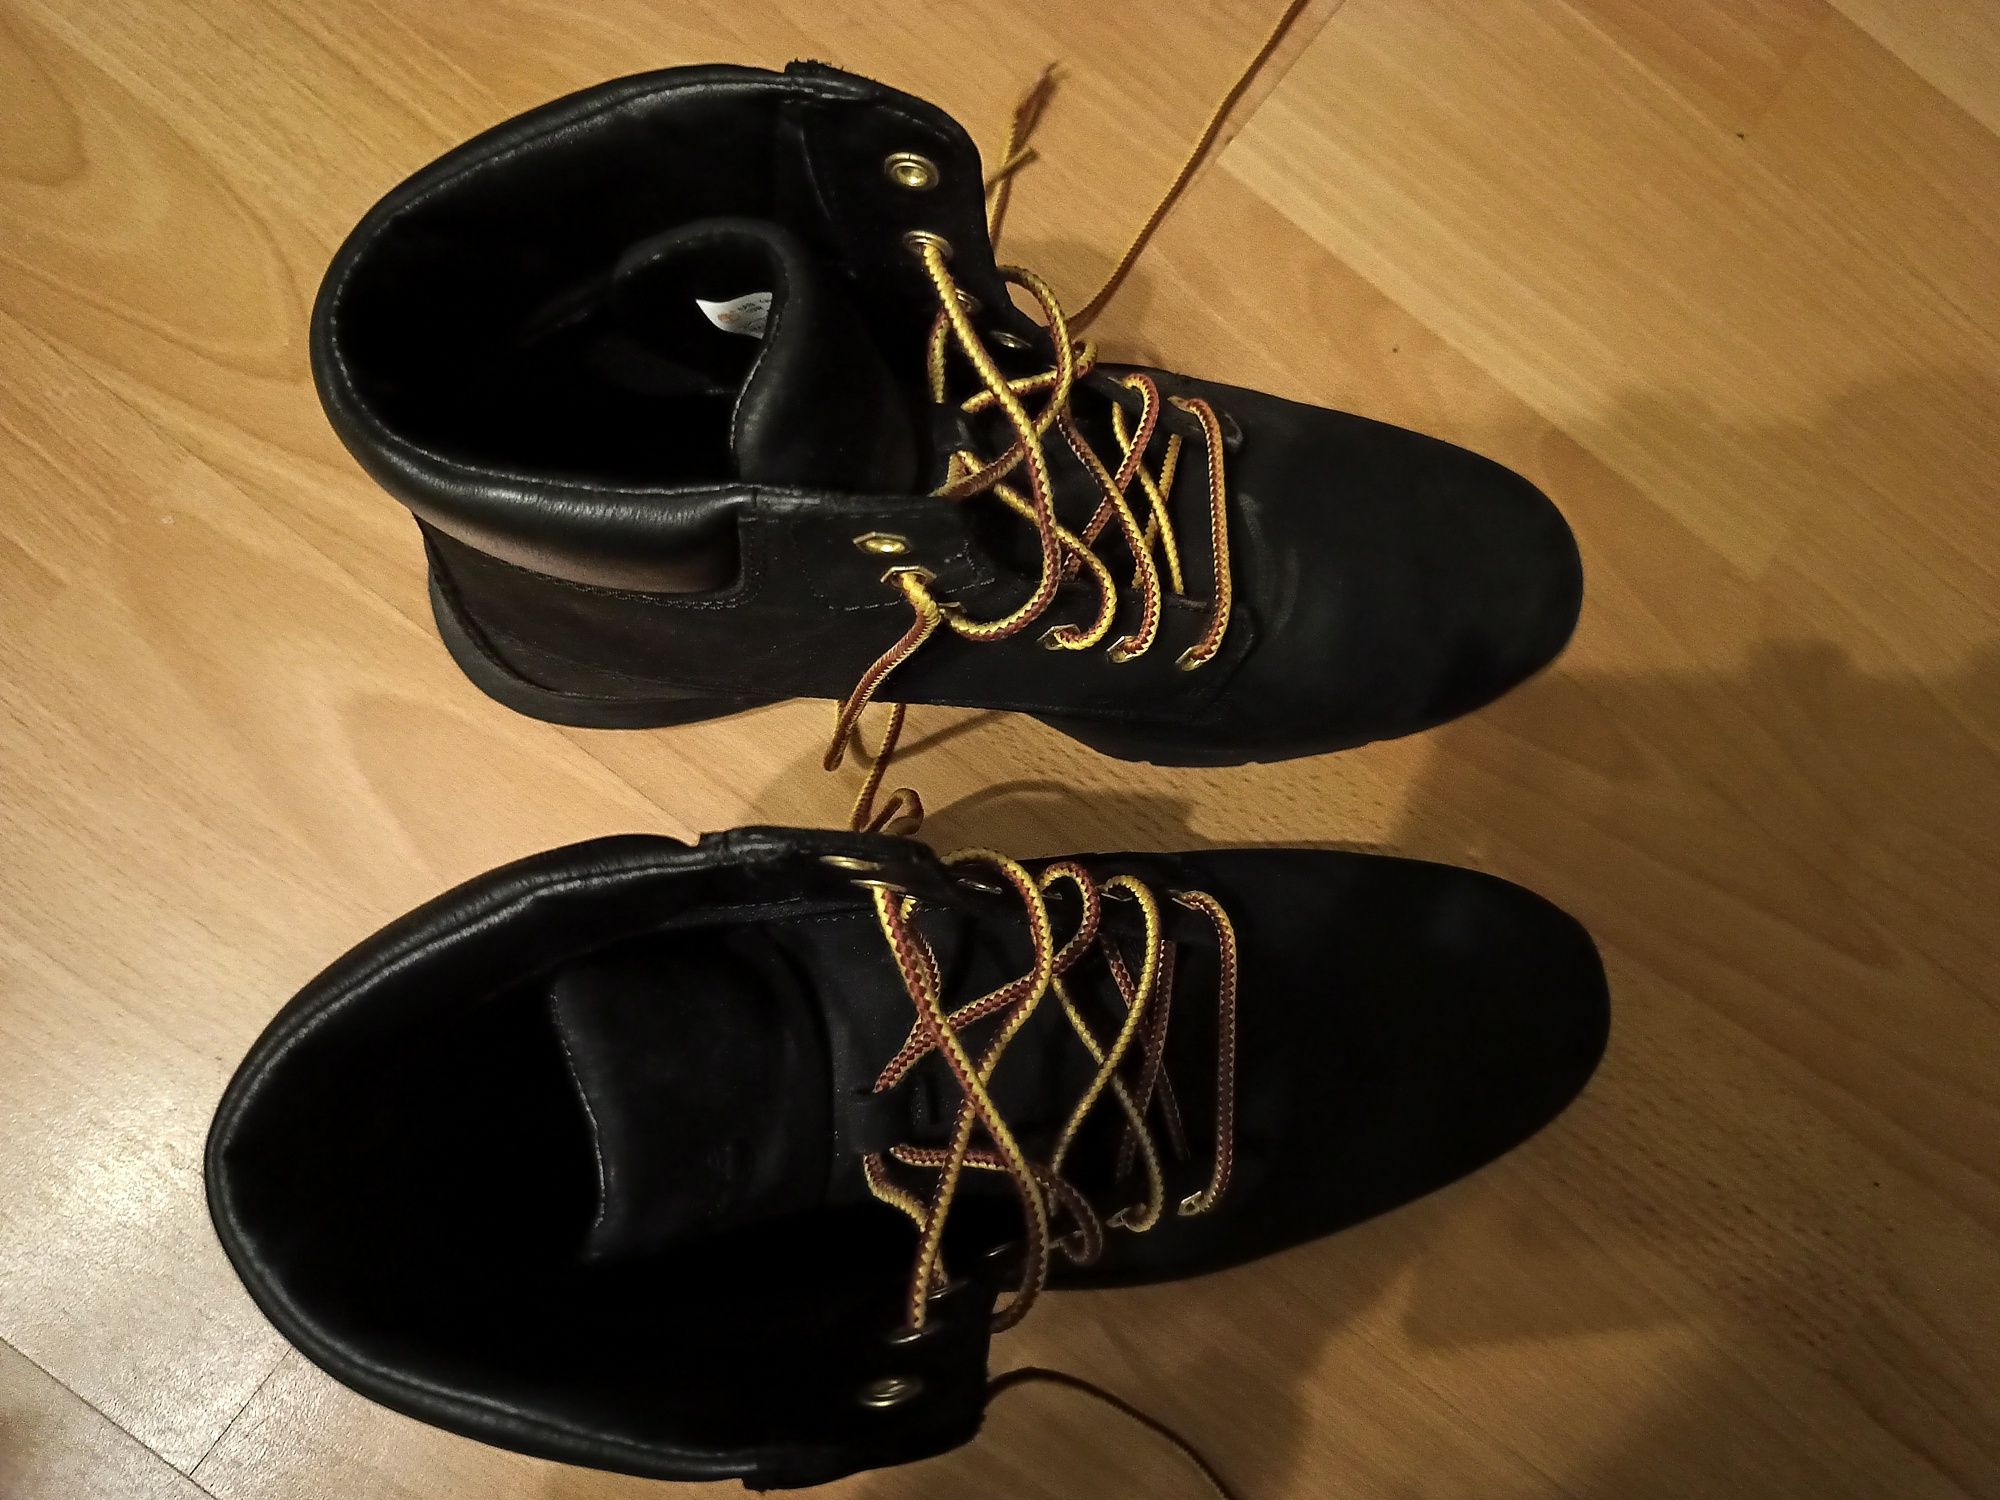 Timberland buty męskie 44 zima jesień